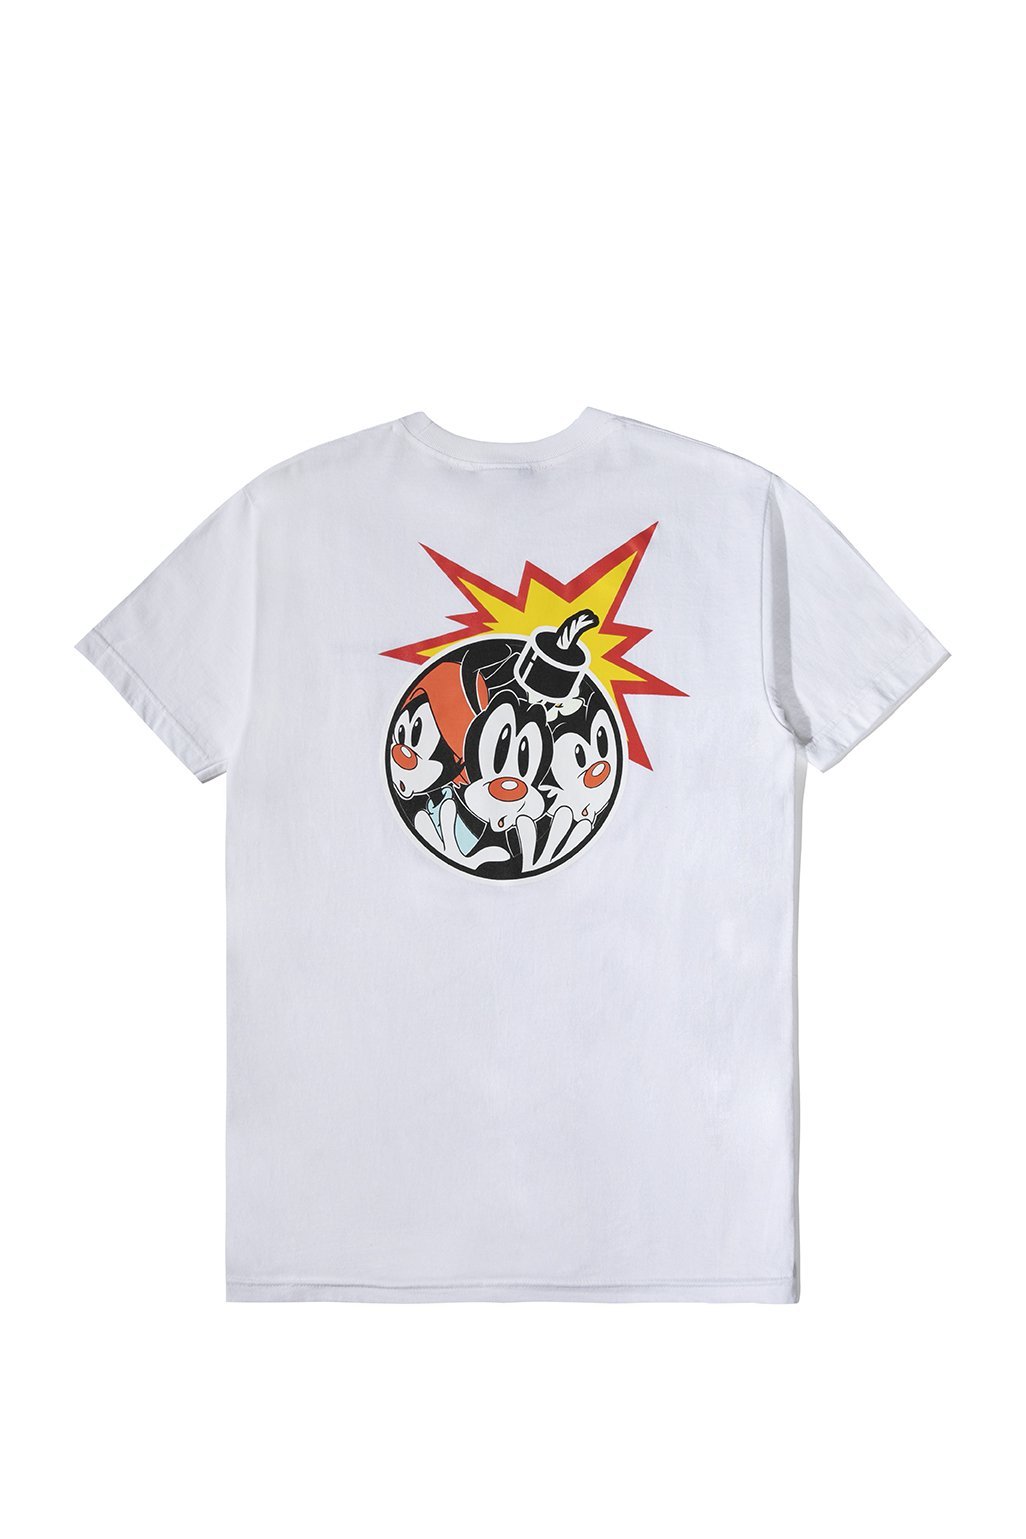 The Hundreds x Animaniacs Bomb T-Shirt White Men's - SS20 - US